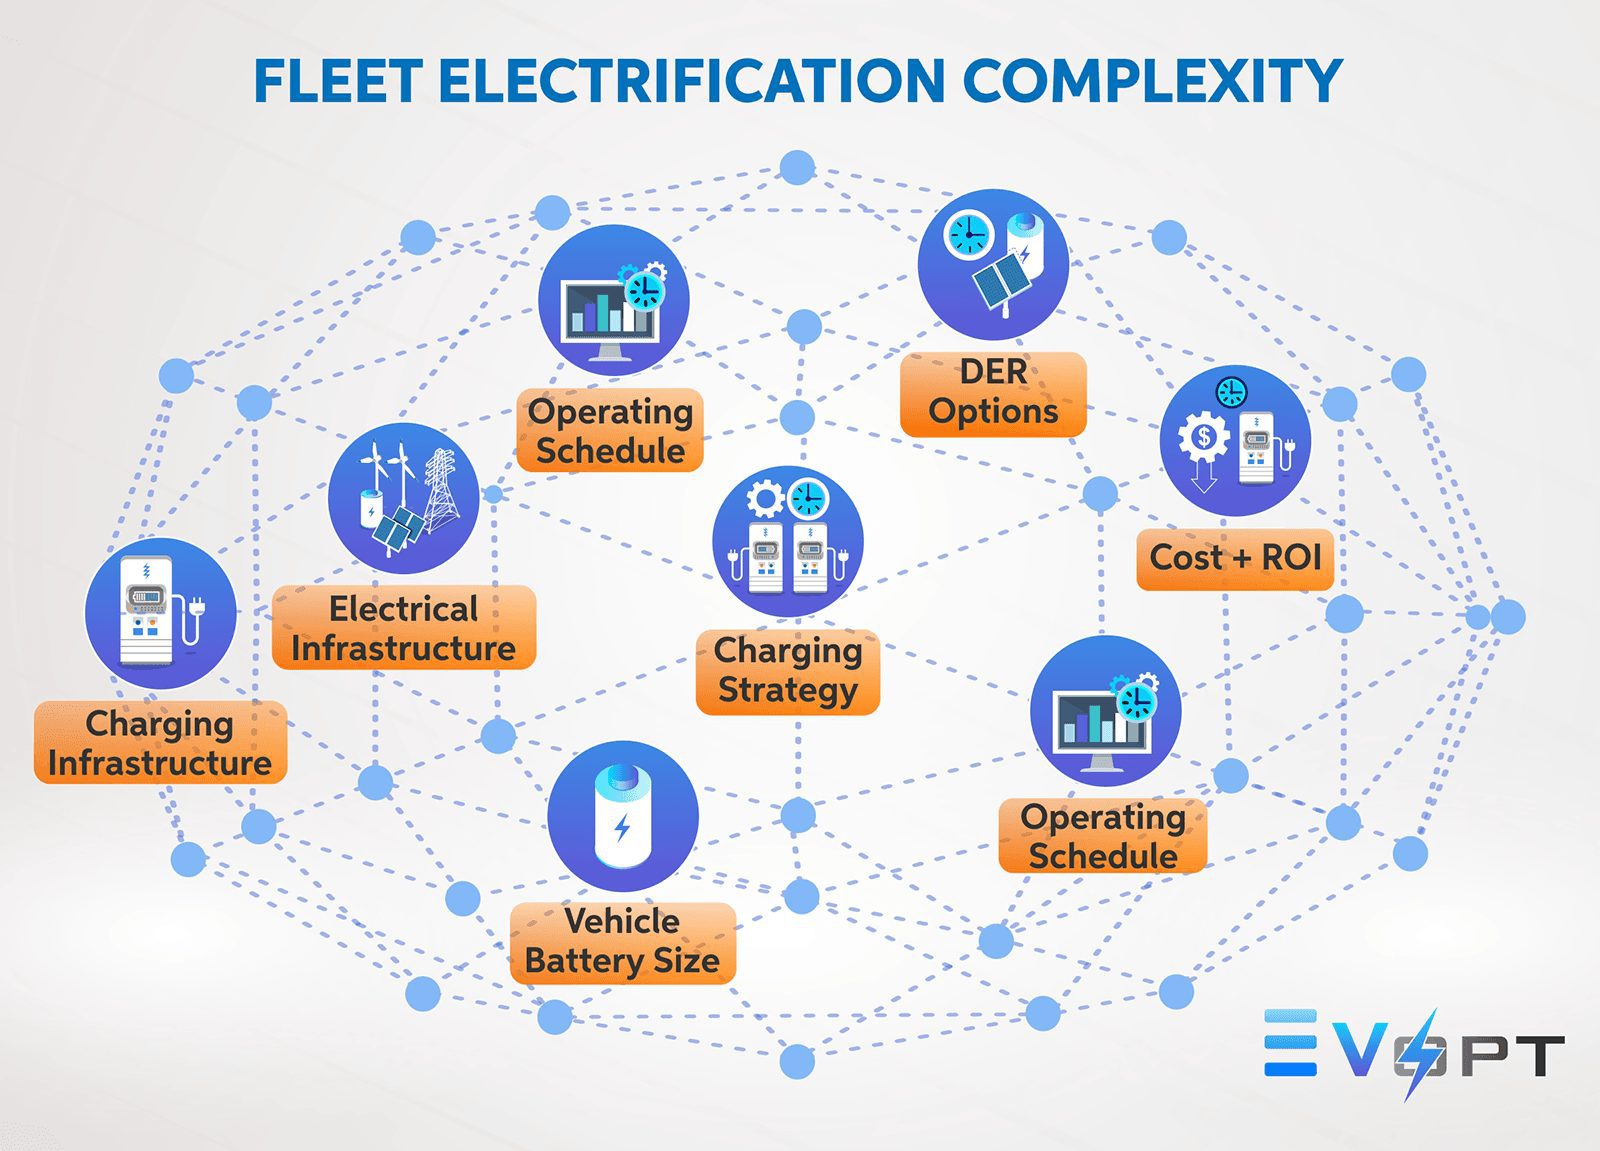 Fleet Electrification Complexity